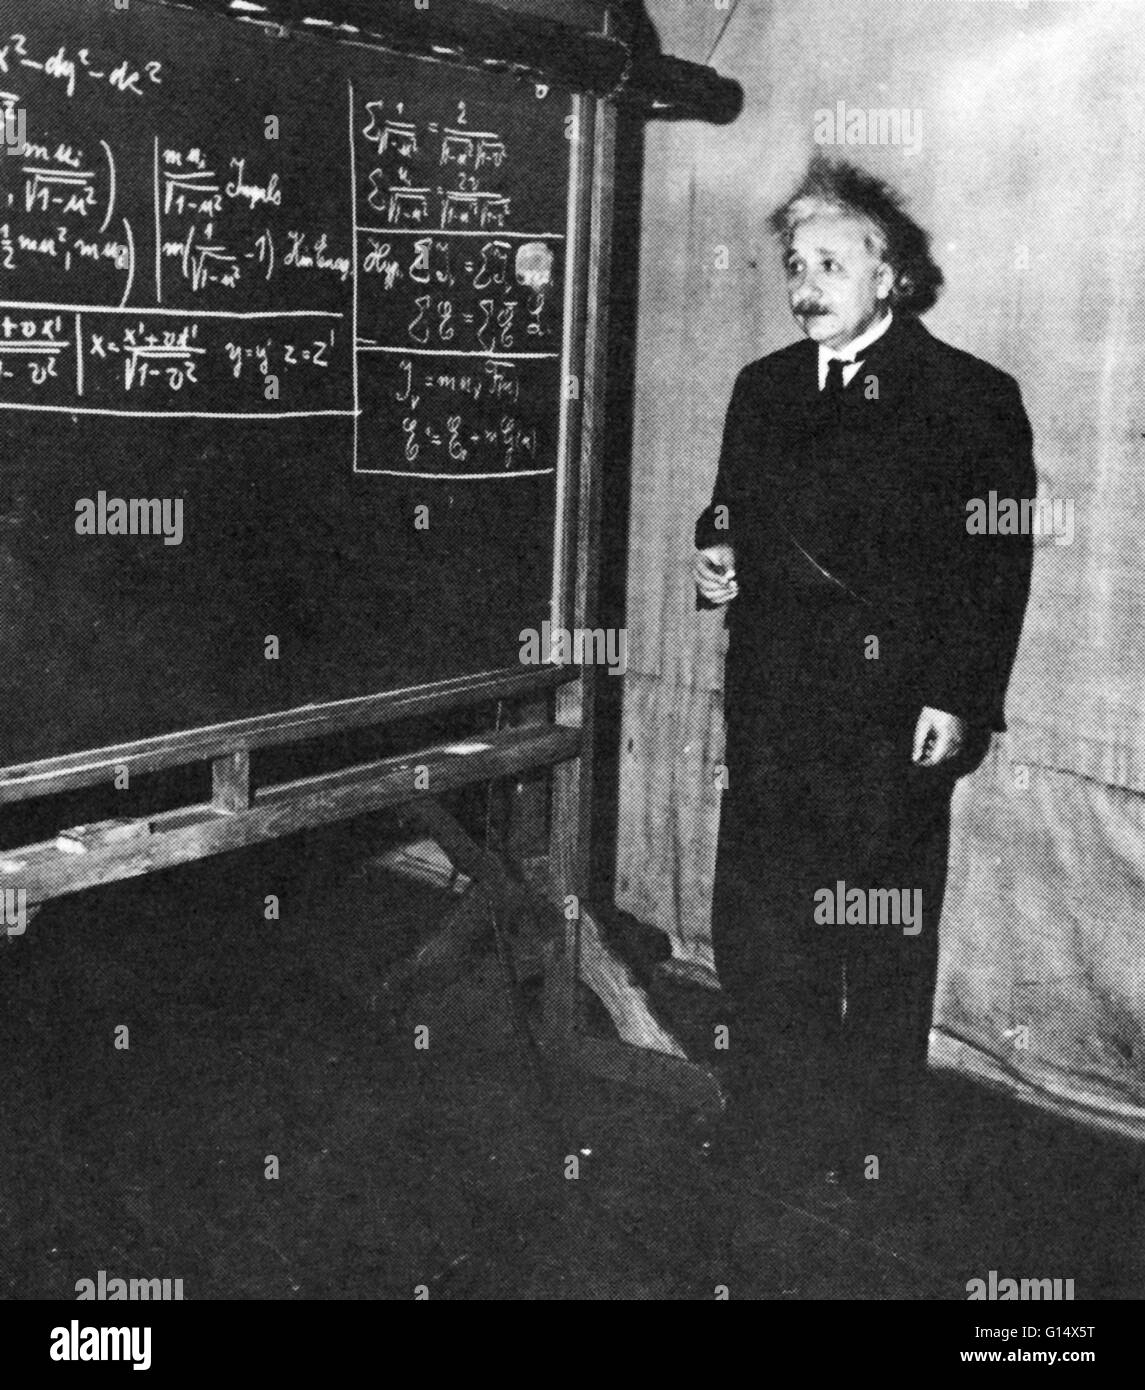 Undatiertes Bild von Einstein in Princeton. Albert Einstein (14. März 1879 - 18. April 1955) war ein deutschstämmiger theoretischer Physiker, der die allgemeine Relativitätstheorie, bewirken eine Revolution in der Physik entwickelt. Einstein gilt oft als t Stockfoto